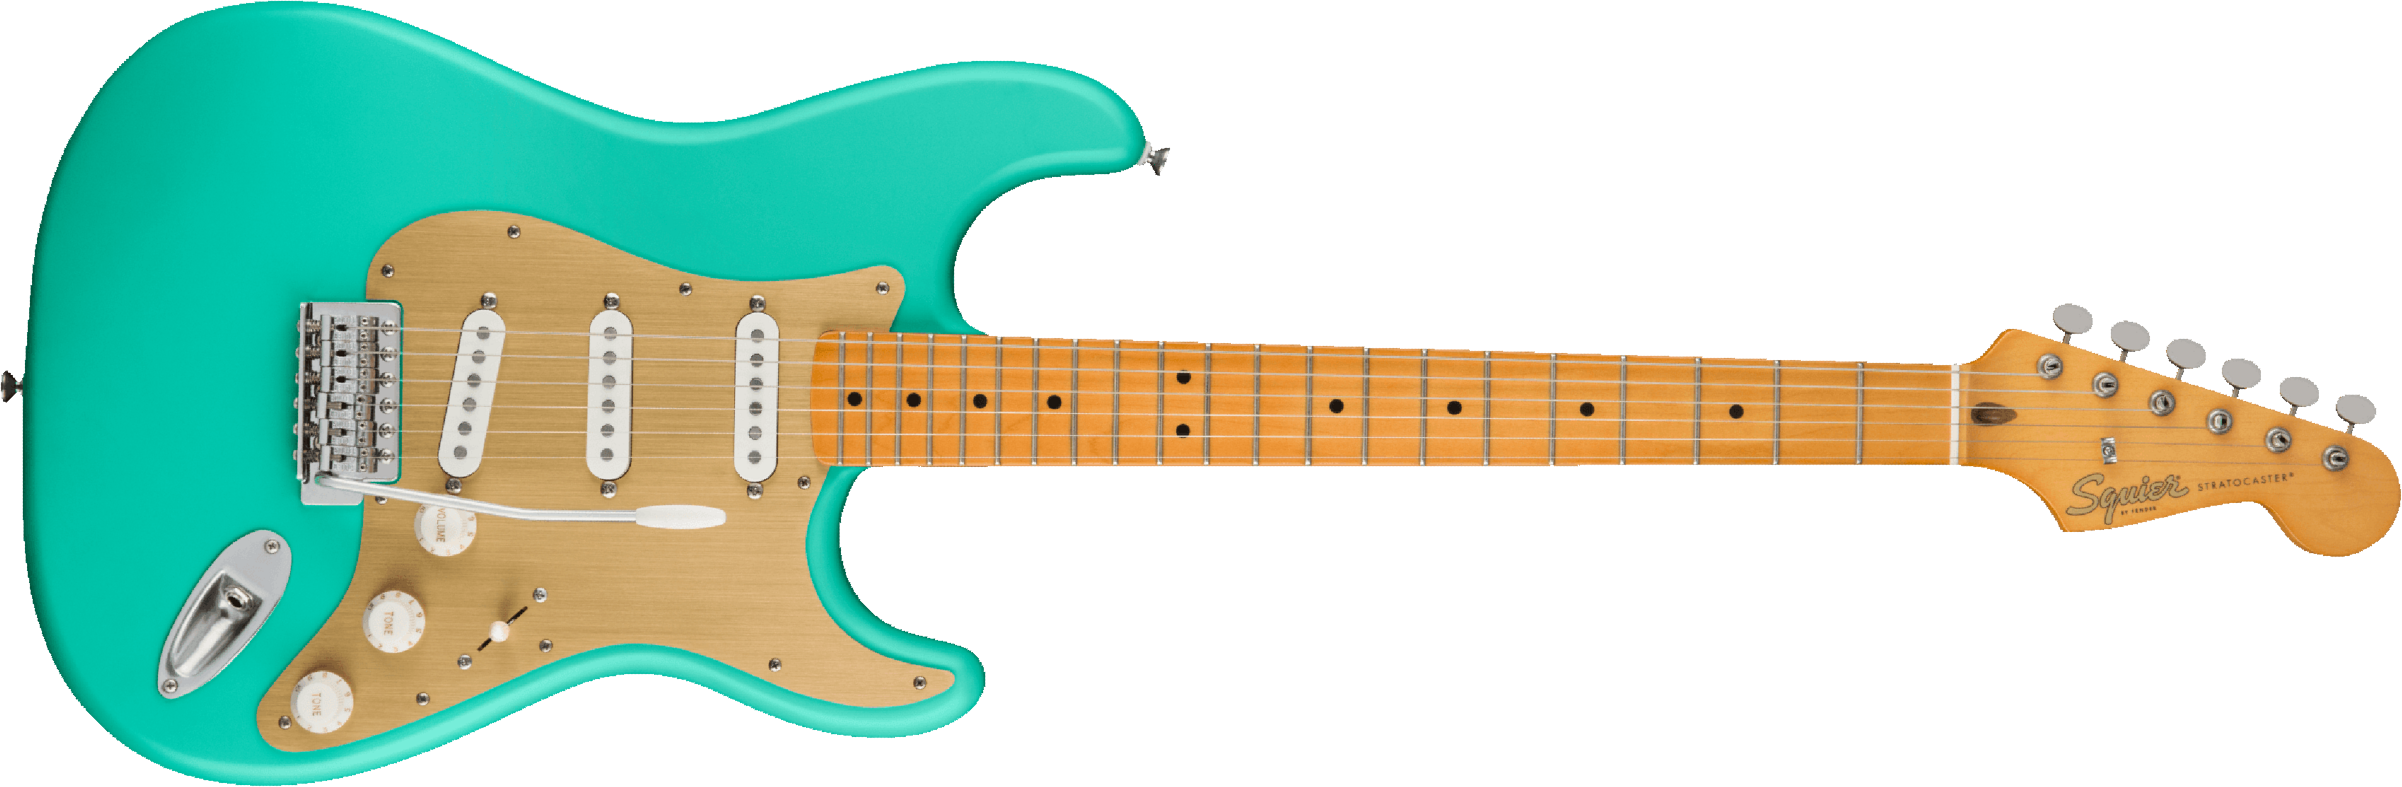 Squier Strat 40th Anniversary Vintage Edition Mn - Satin Seafoam Green - Elektrische gitaar in Str-vorm - Main picture